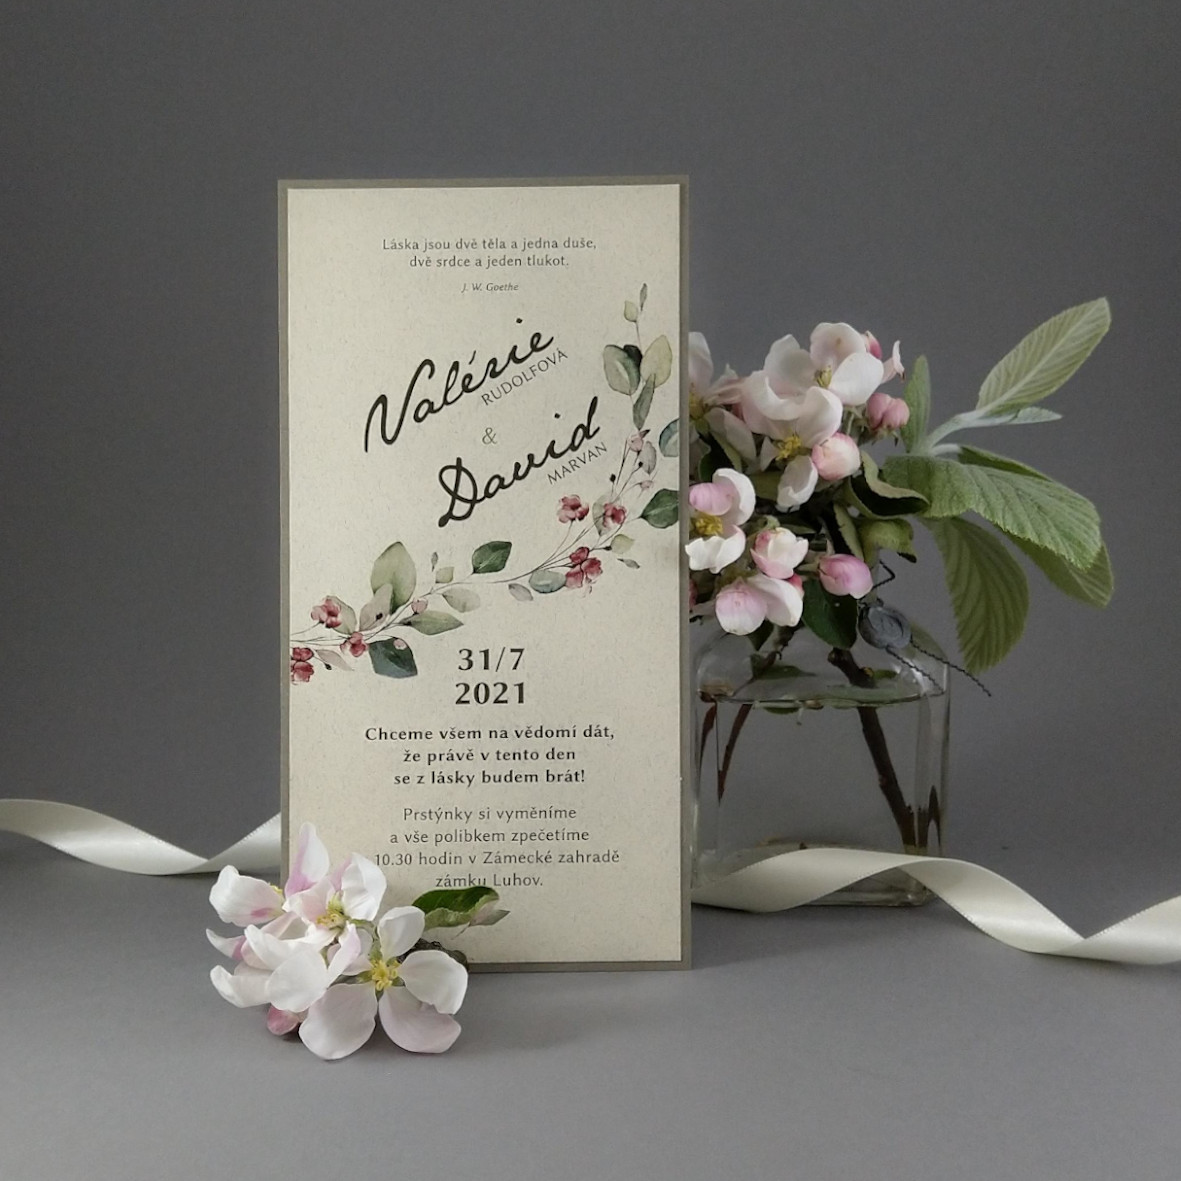 Svatební oznámení – dvouvrstvá DL karta z papírů s příměsí bavlny s motivem větvičky a bordó květů